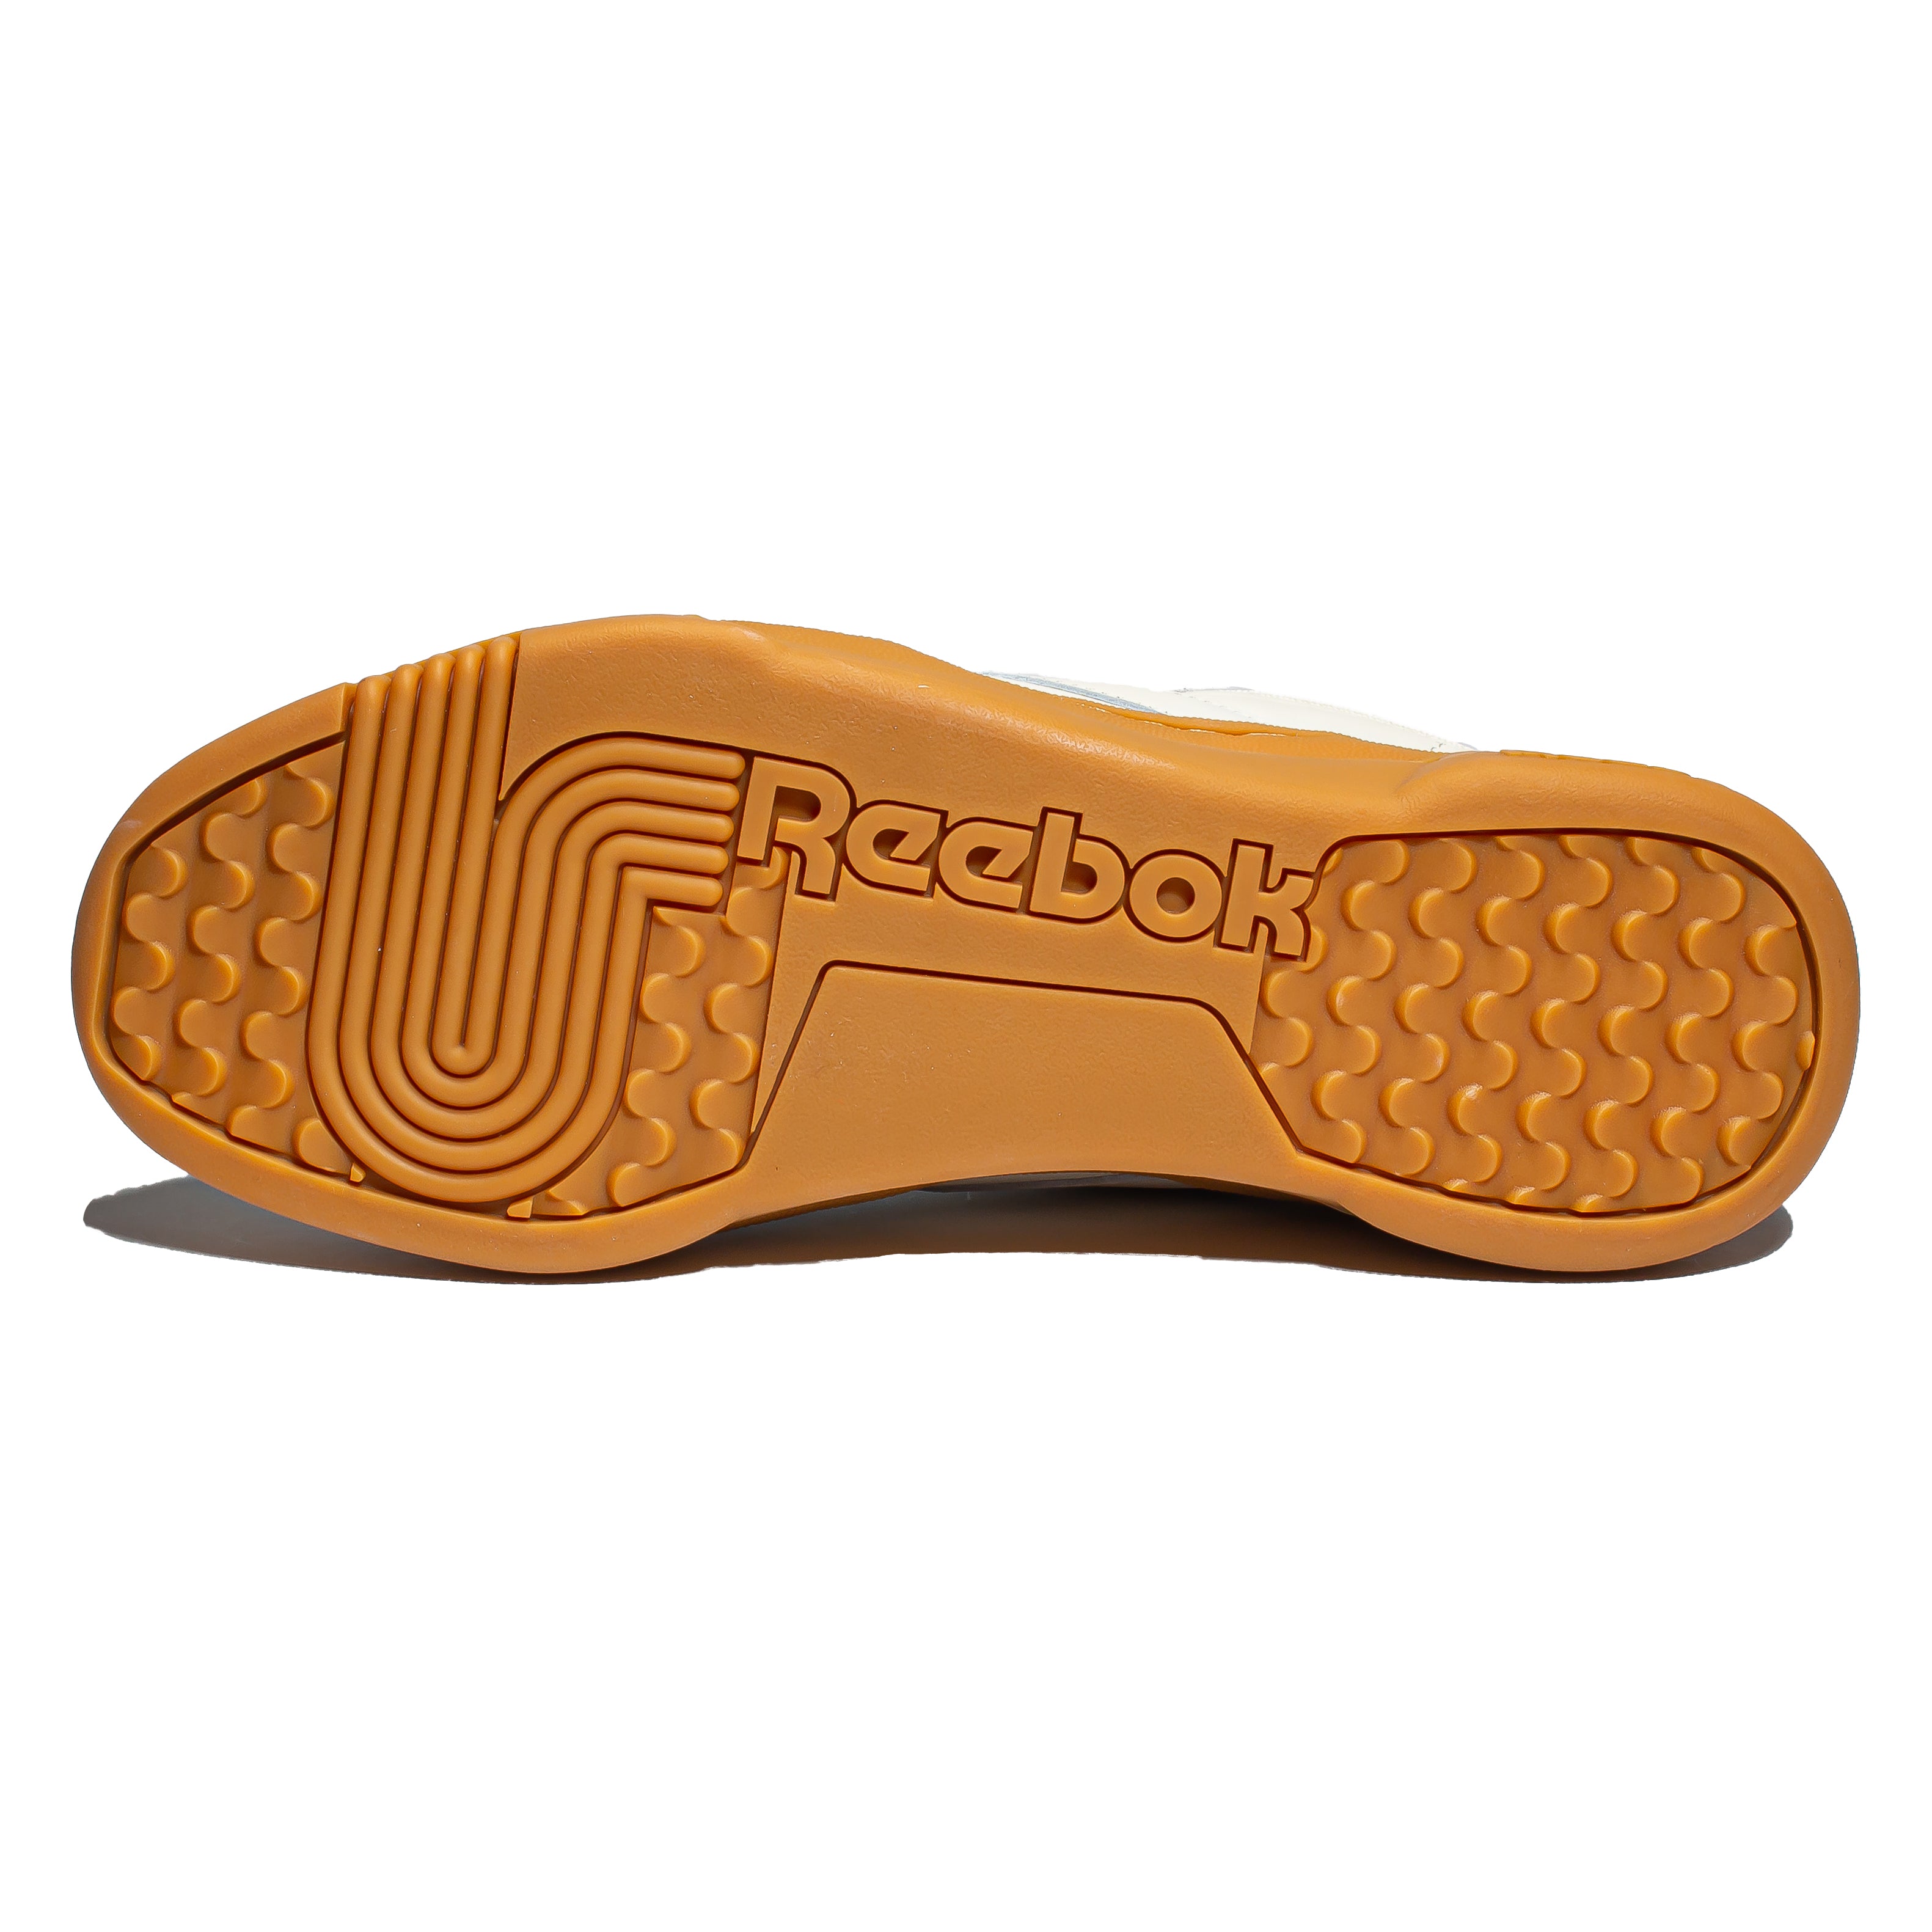 Reebok Club C Forum Chalk & Peach High Top Skate Shoes